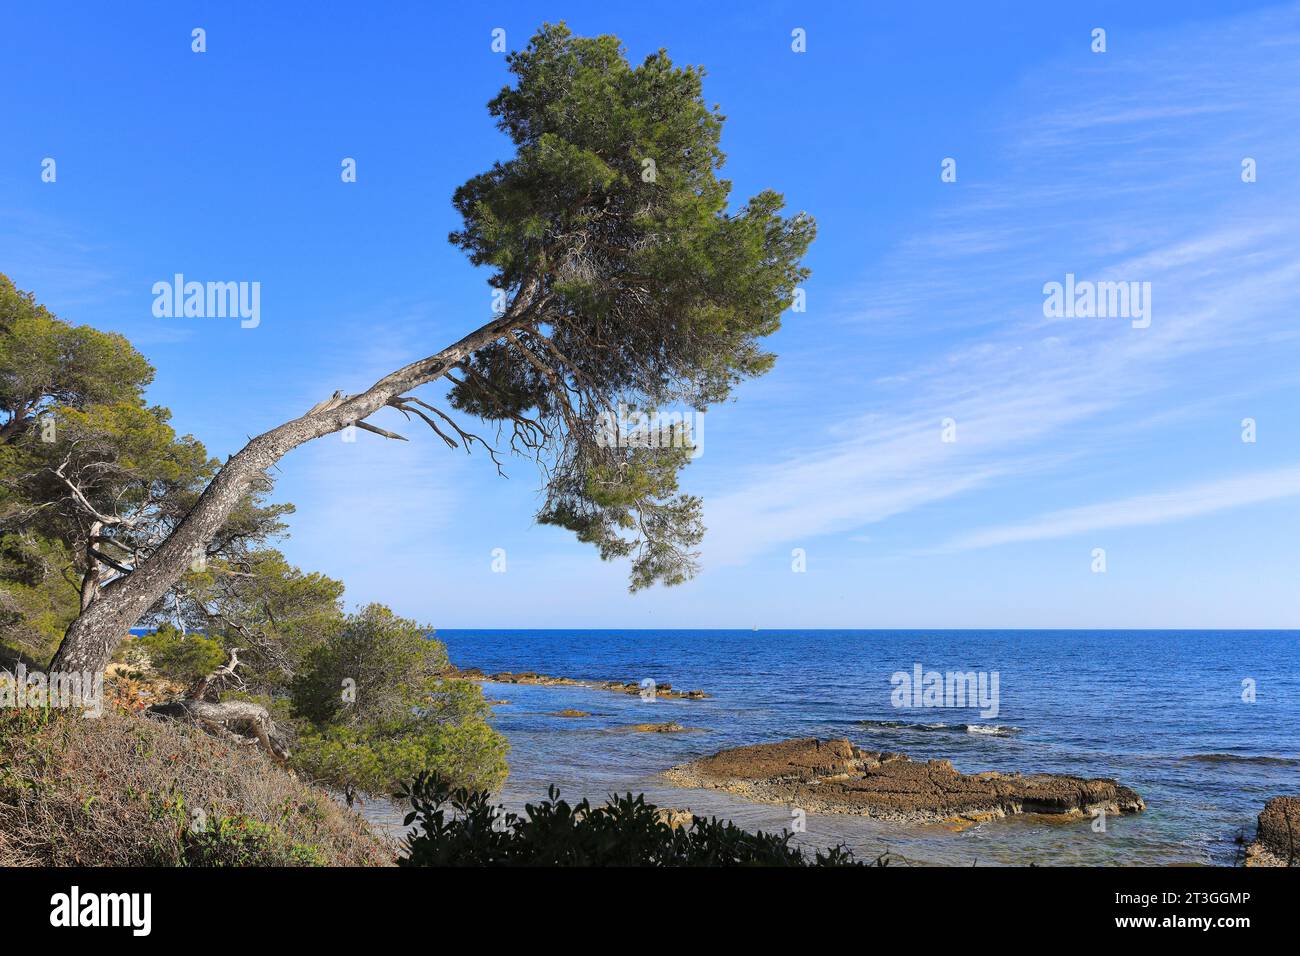 Francia, Alpes Maritimes, Cannes, isole di Lerins, isola di Sainte Marguerite, costa selvaggia Foto Stock